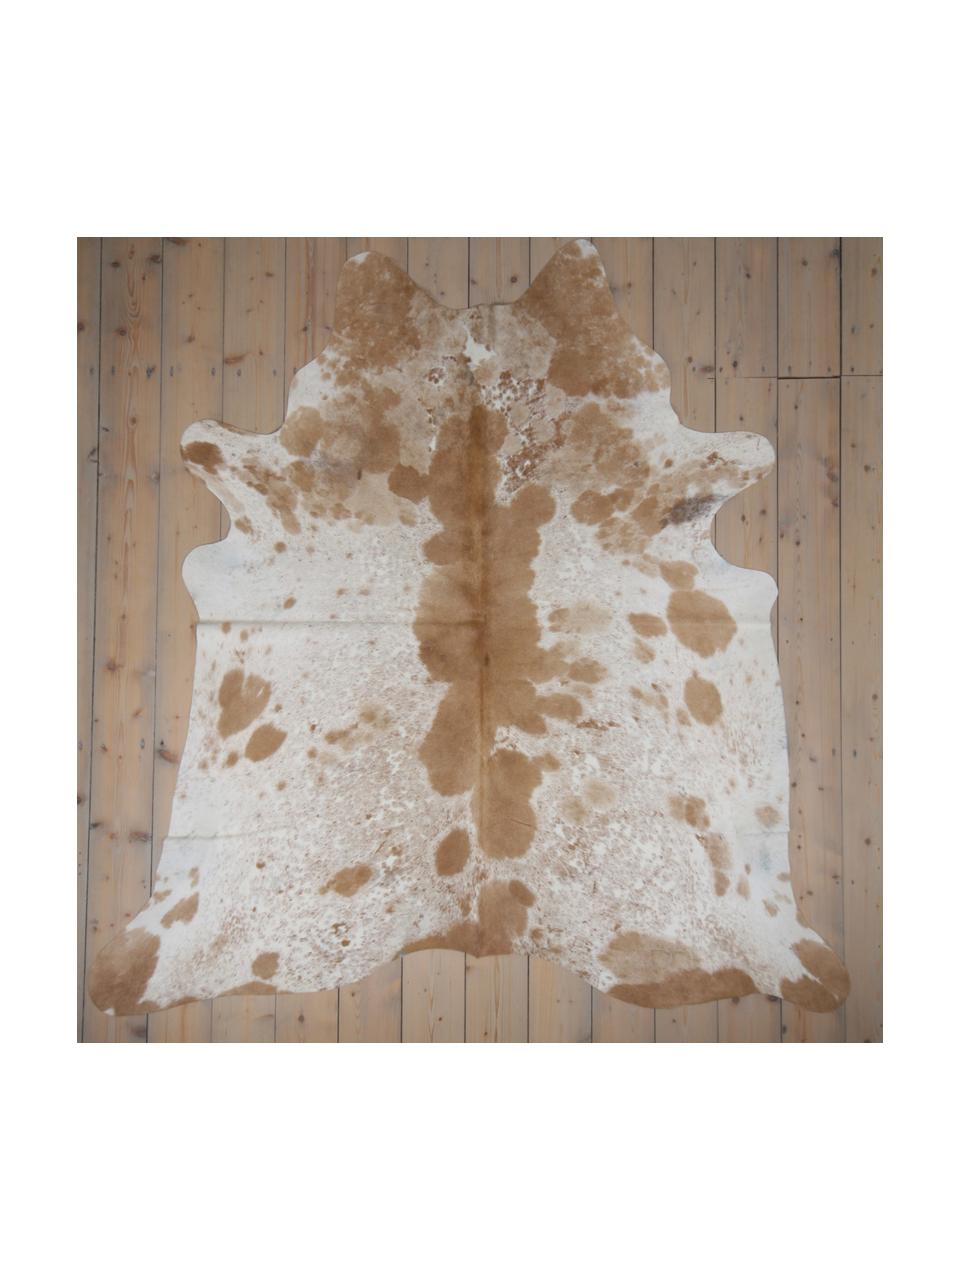 Tappeto in pelle di mucca Gonzarius, Pelle bovina, Marrone cognac, bianco, Pelle di mucca unica 1065, 160 x 180 cm